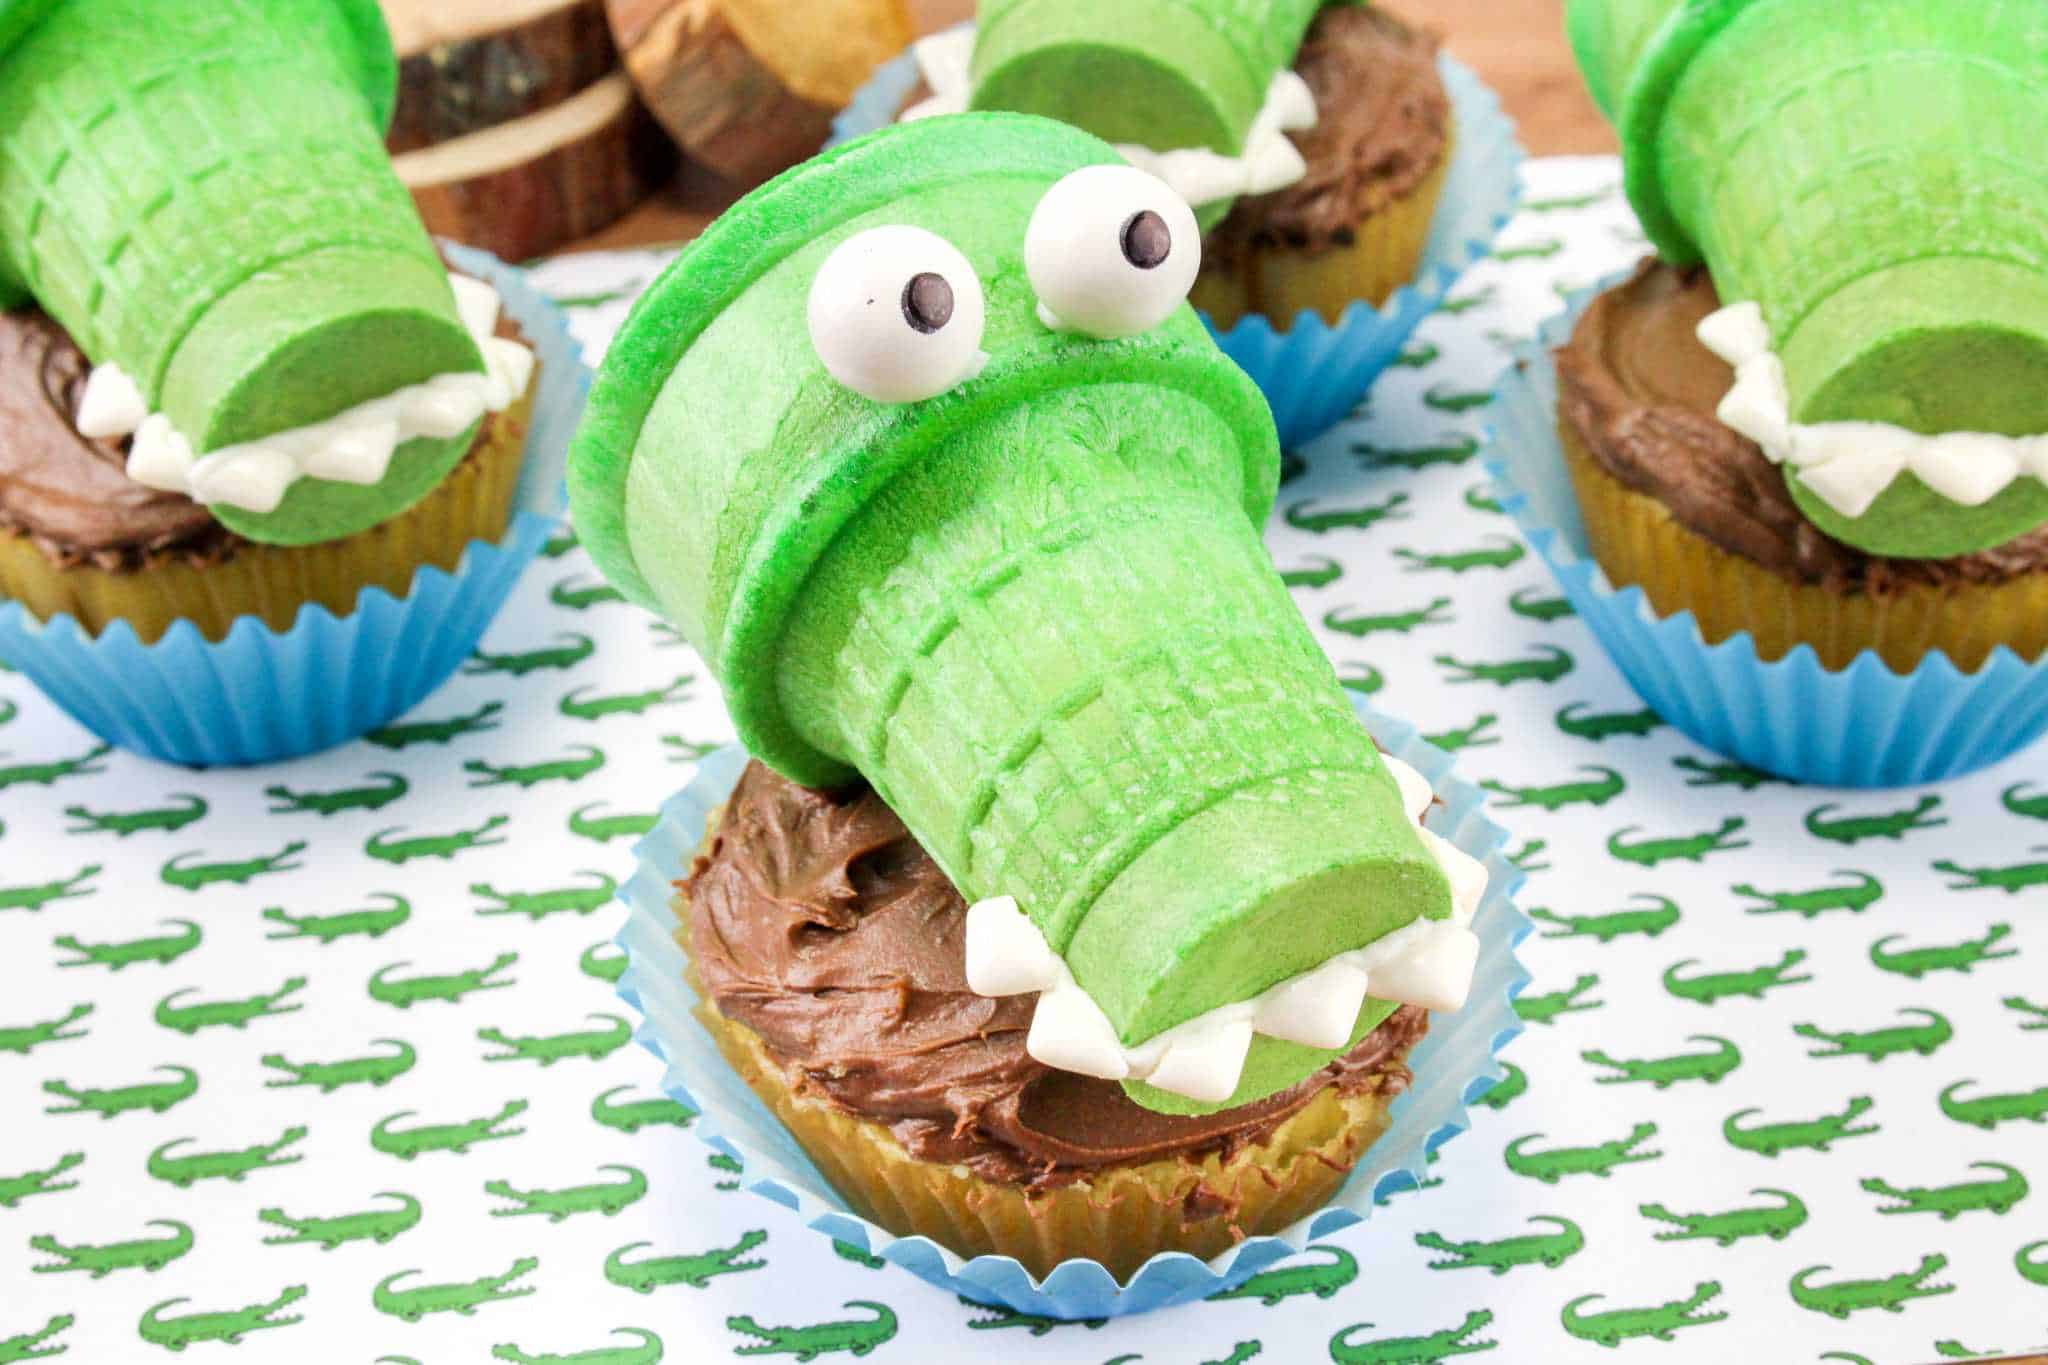 Cute Alligator Cupcake Cake!!! 💖💖... - Recipes From Heaven | Facebook